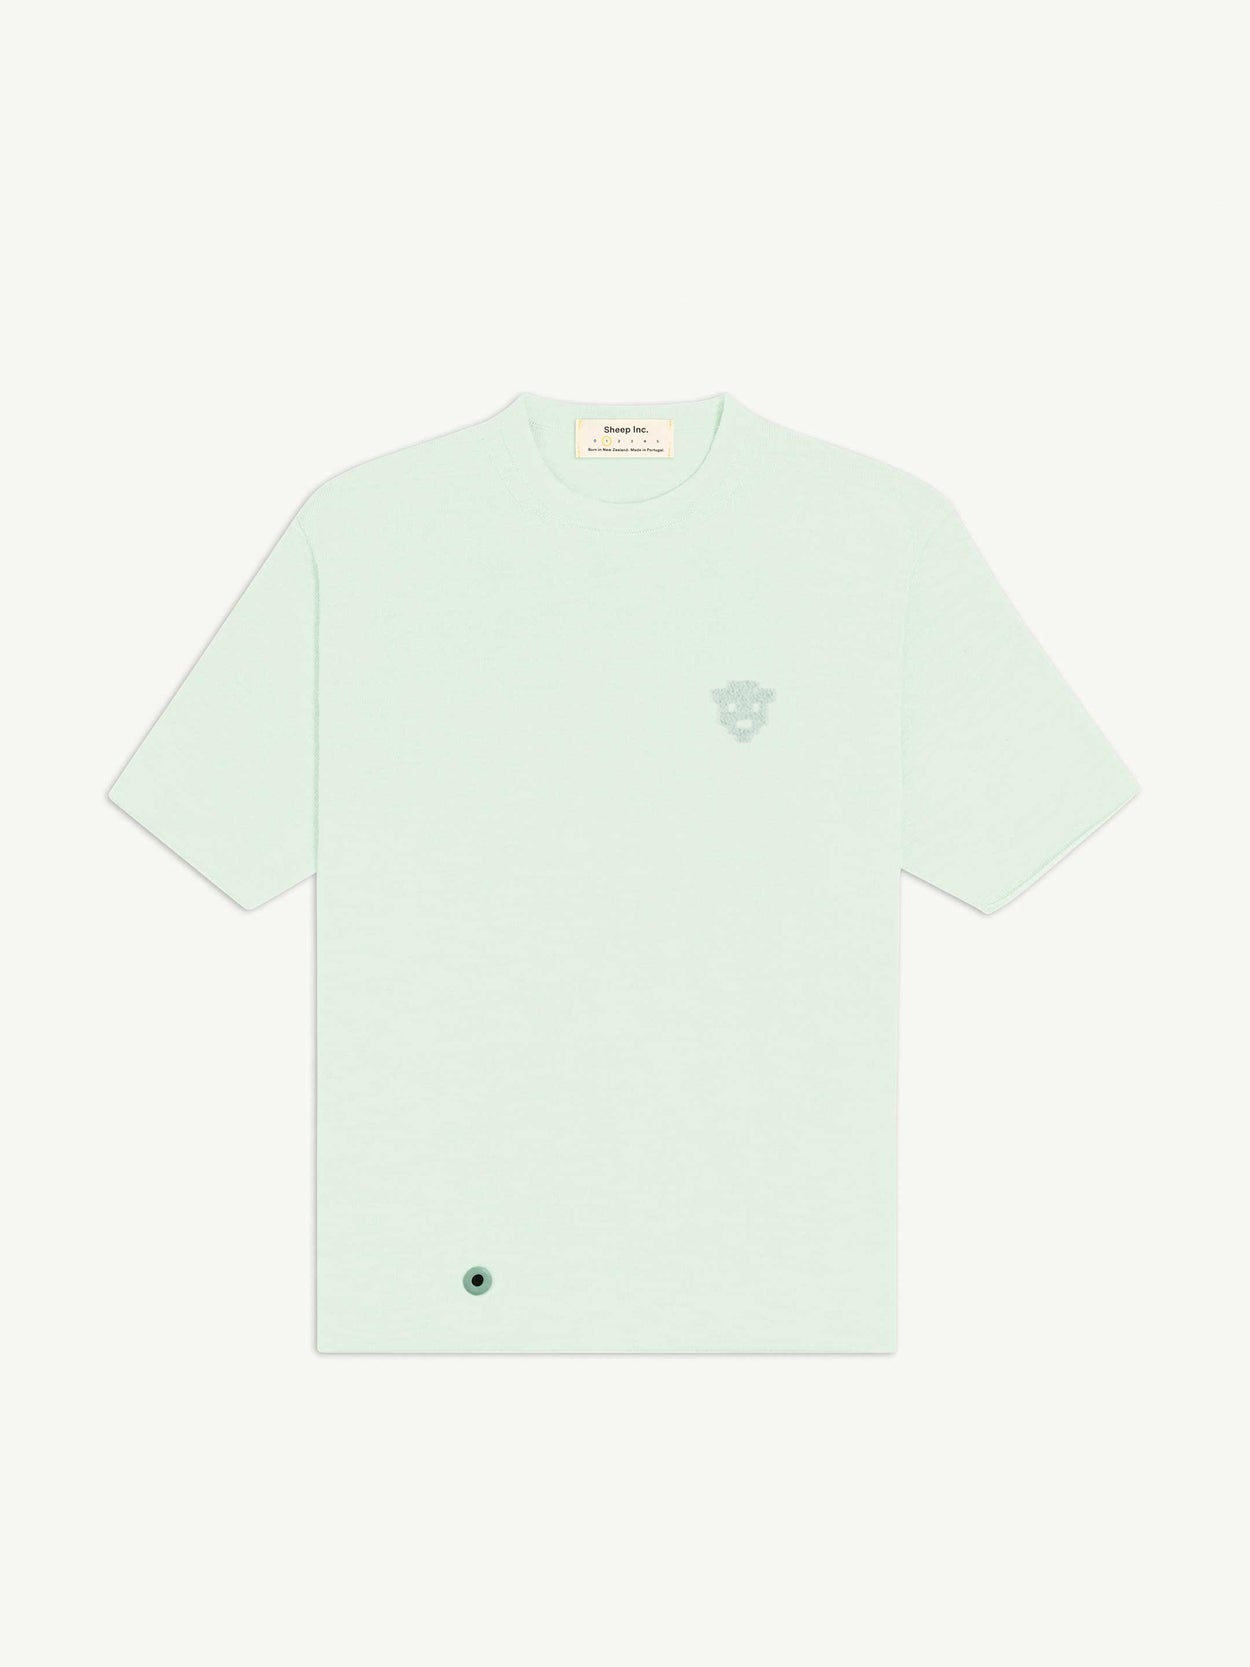 The 8-Bit Sheep T-Shirt - Mint Green - Men's/Women's - Sheep Inc